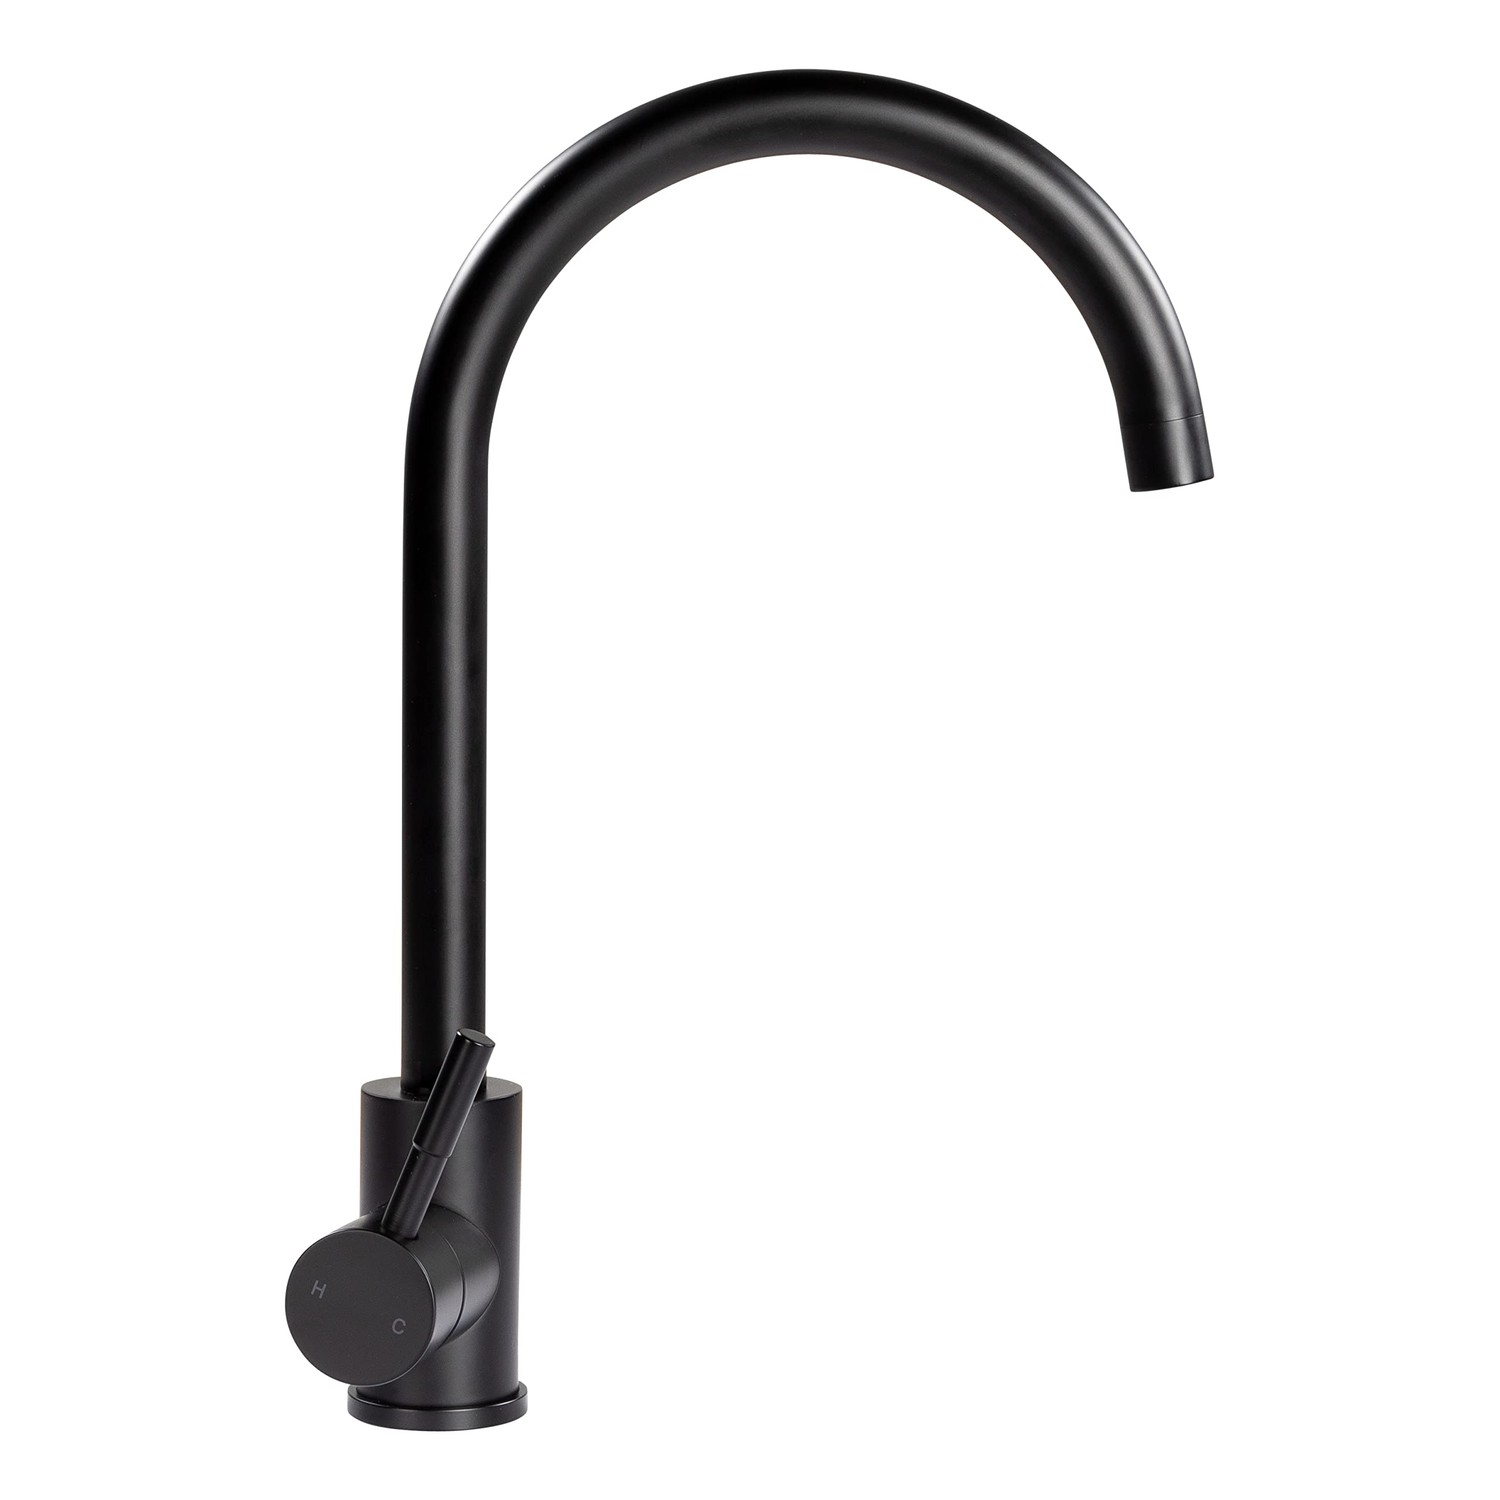 Curved Gooseneck Faucet - Black Matte (Retail Box)